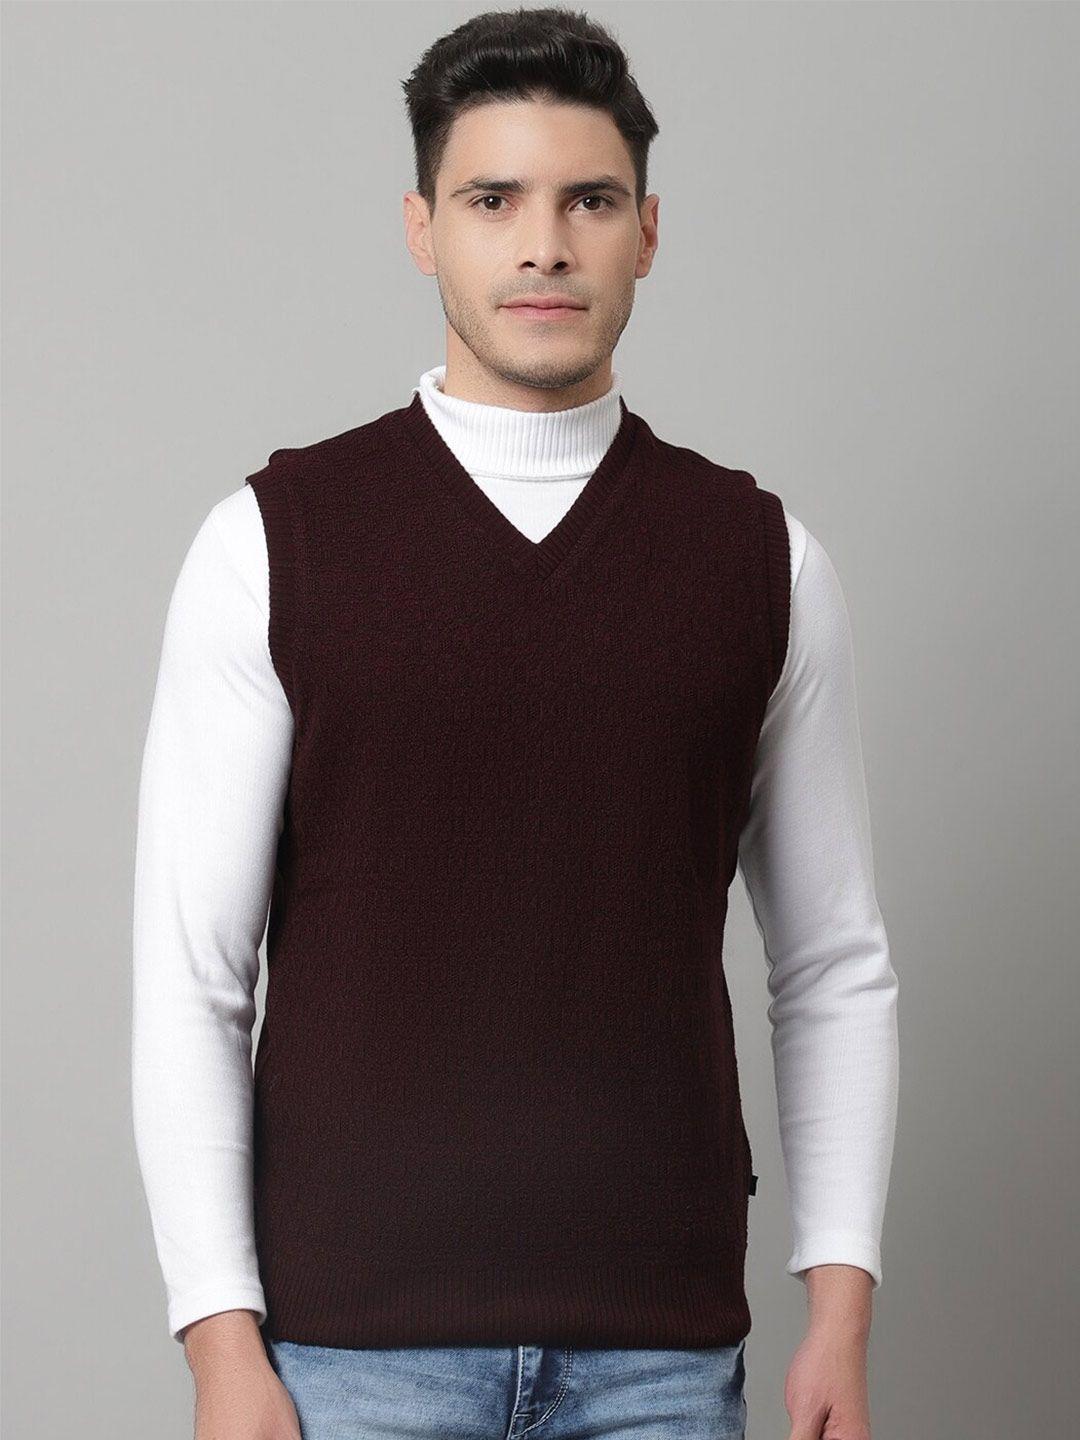 cantabil men maroon wool sweater vest